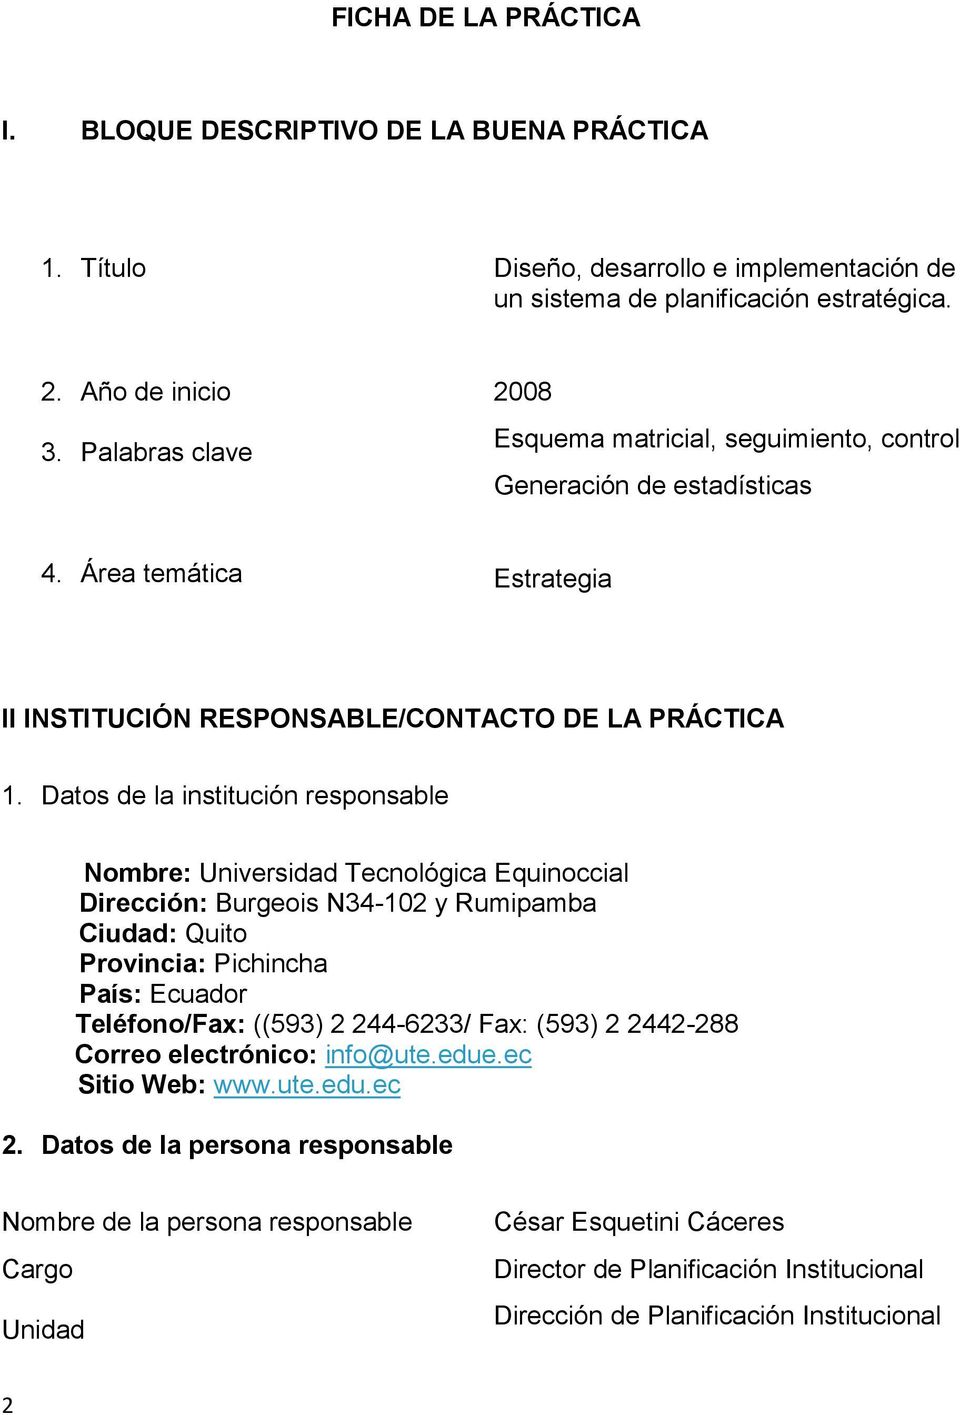 Datos de la institución responsable Nombre: Universidad Tecnológica Equinoccial Dirección: Burgeois N34-102 y Rumipamba Ciudad: Quito Provincia: Pichincha País: Ecuador Teléfono/Fax: ((593) 2